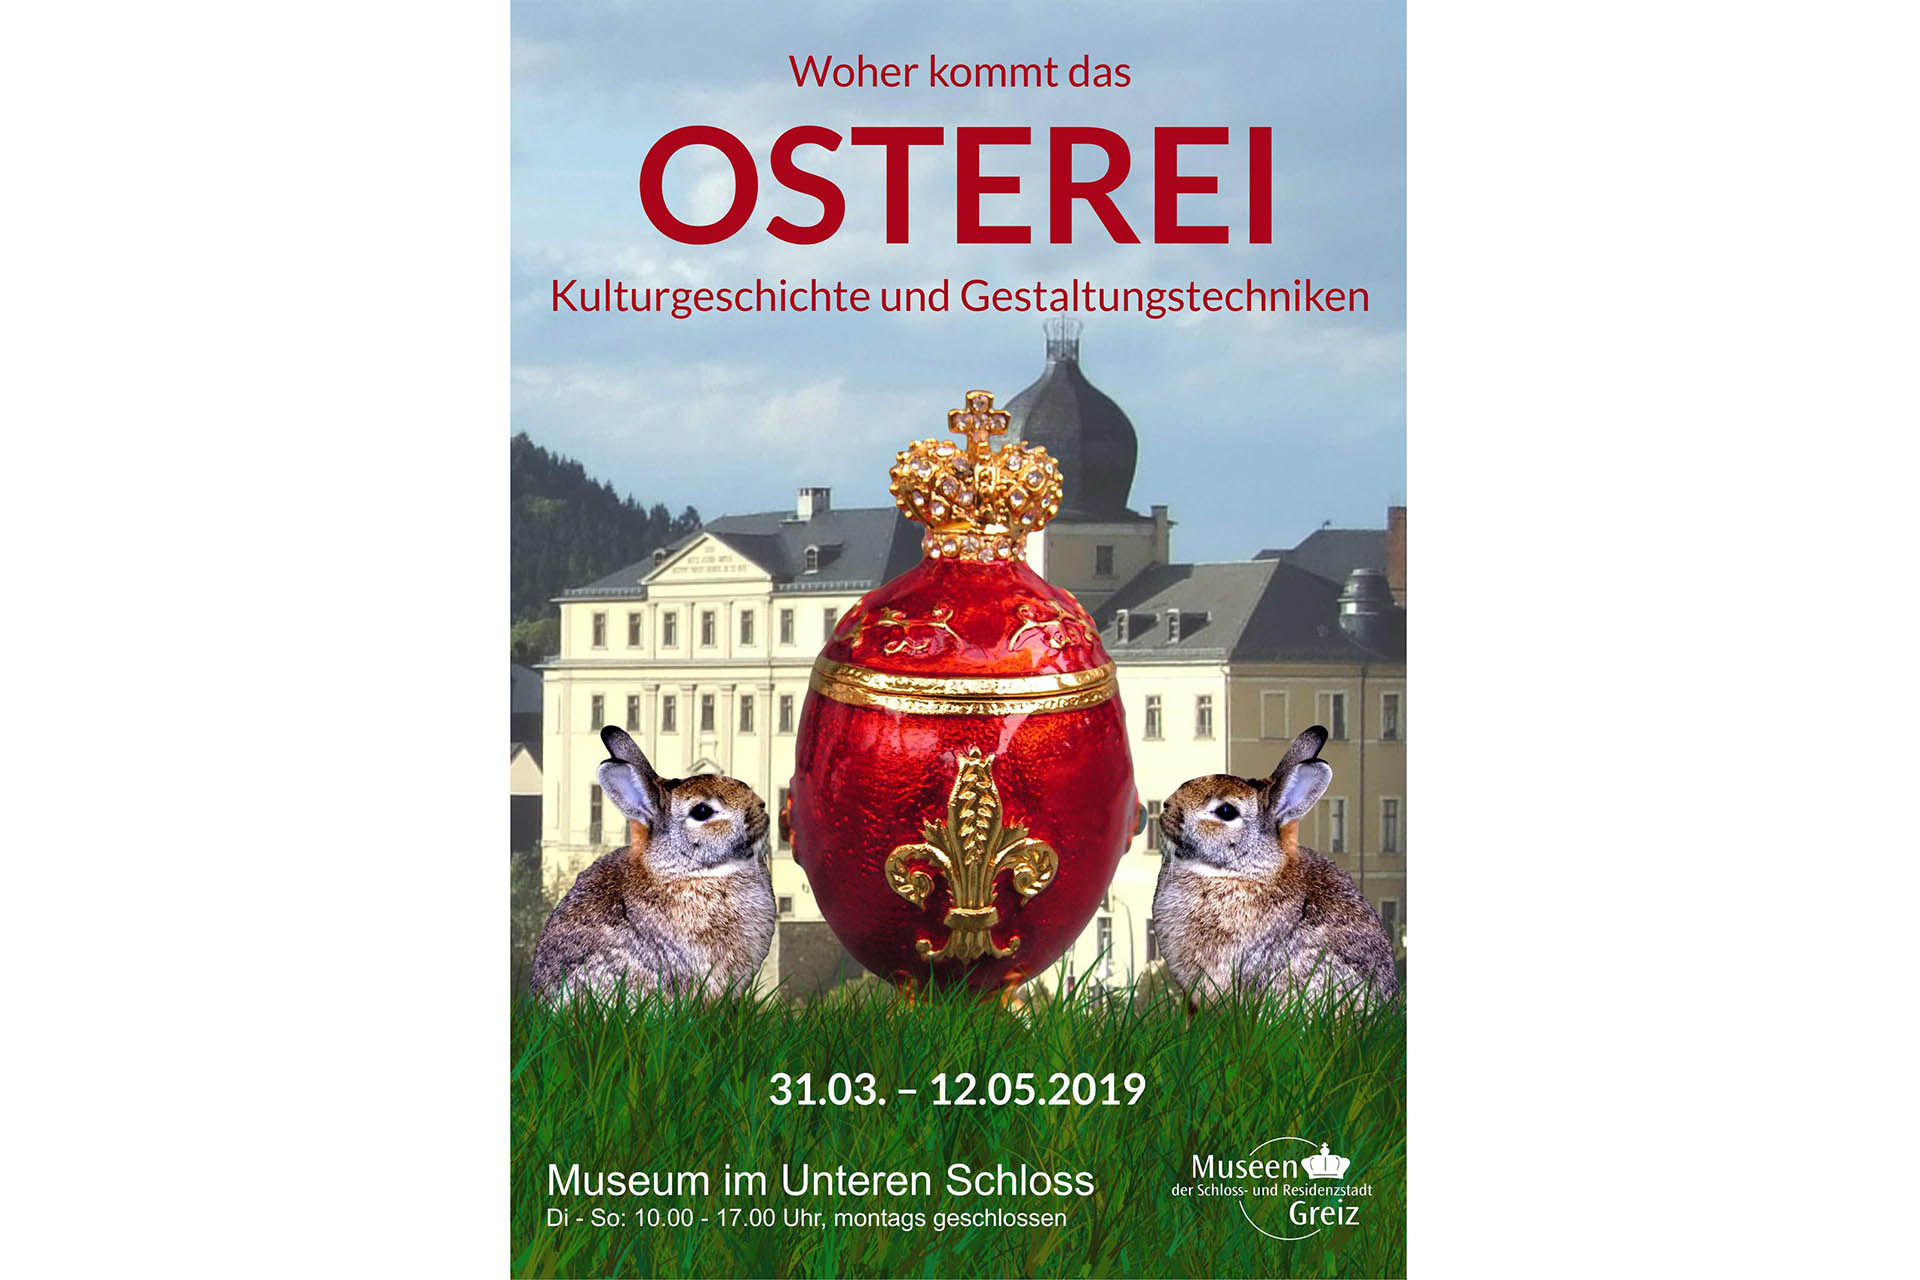 Museum im Unteren Schloss Greiz: WOHER KOMMT DAS OSTEREI?